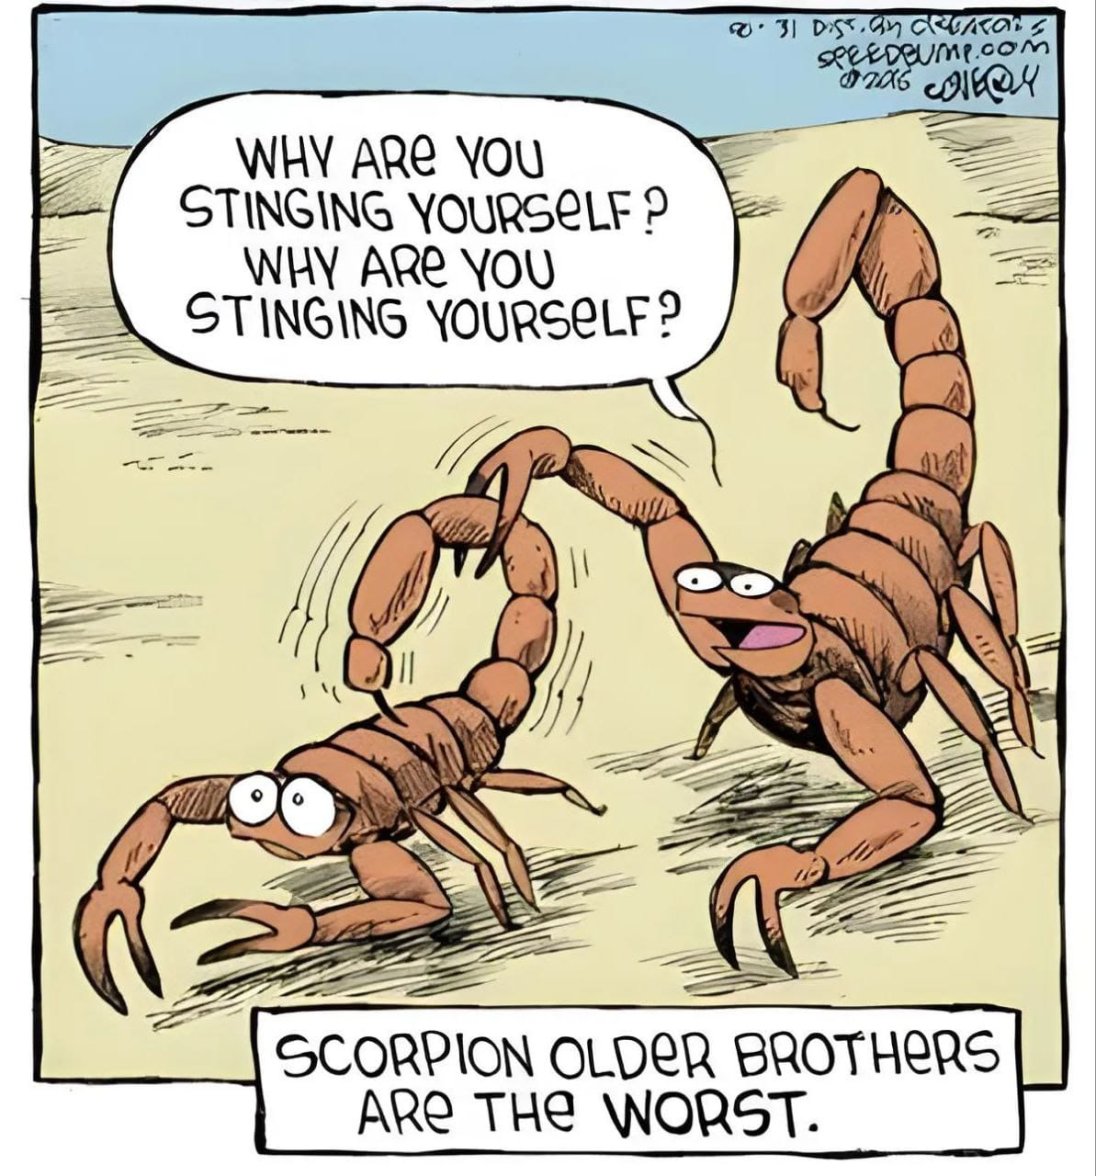 scorpions.jpg